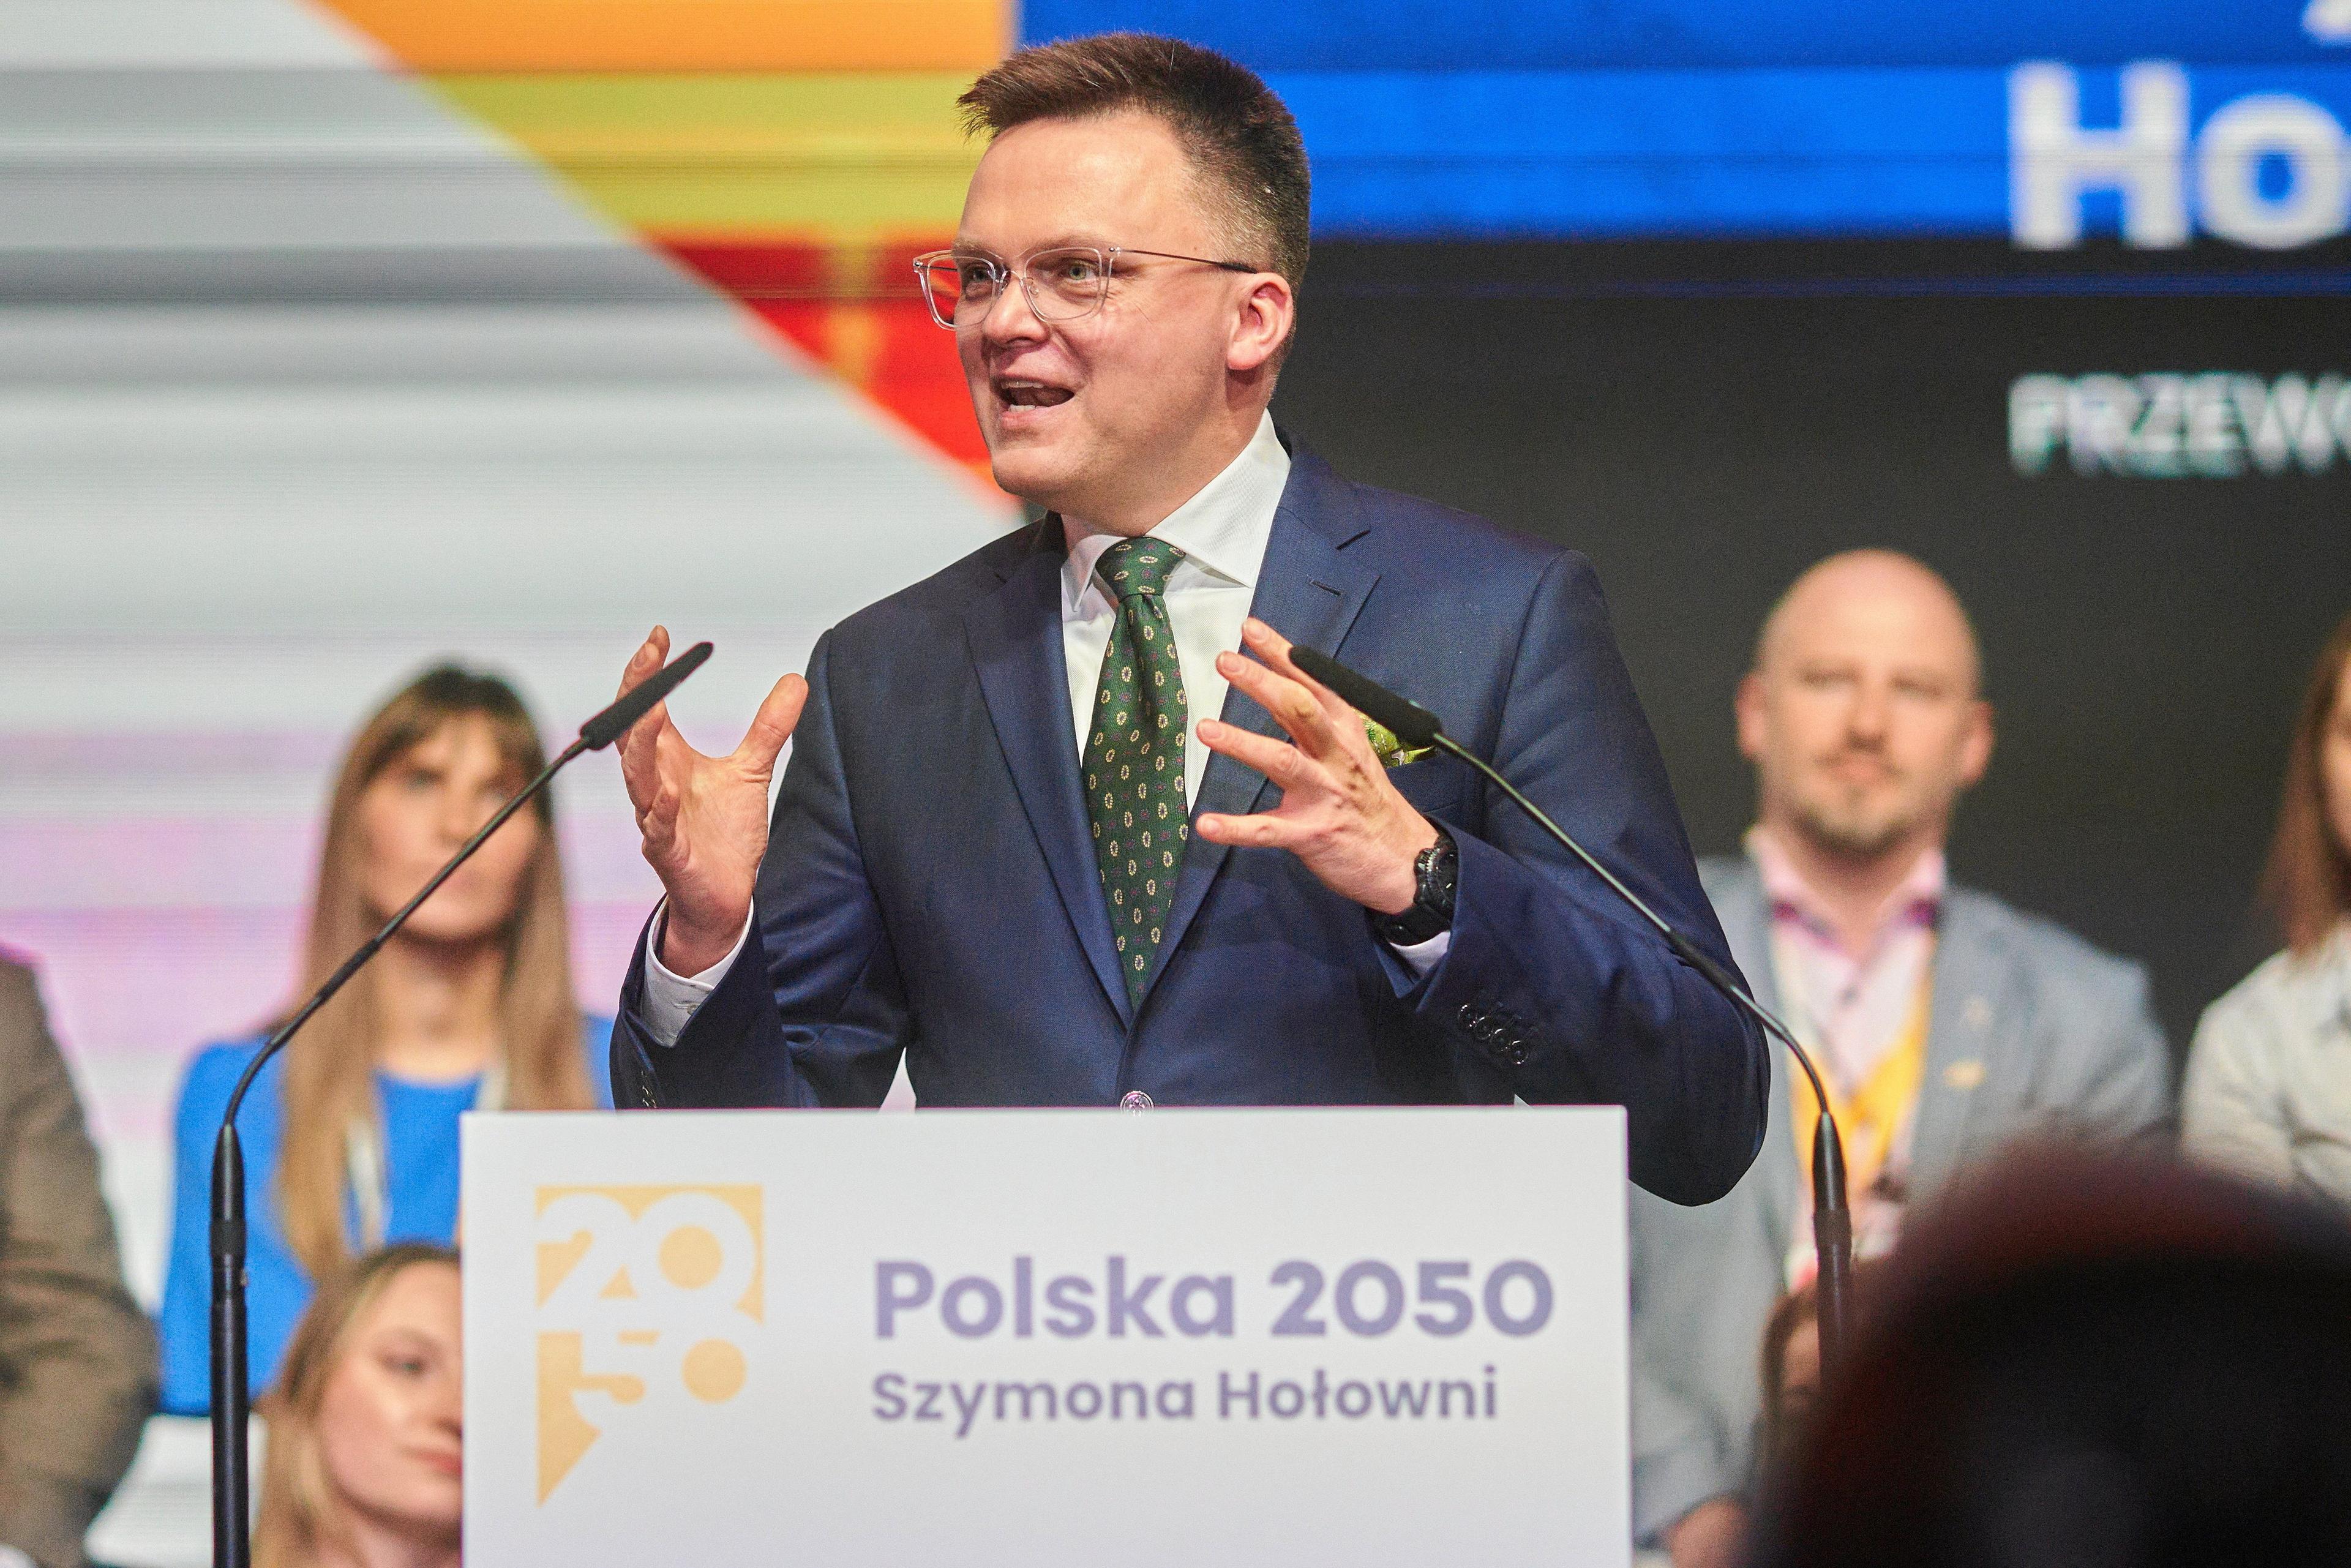 Szymon Hołownia przemawia z mównicy na zjeździe partii Polska 2050